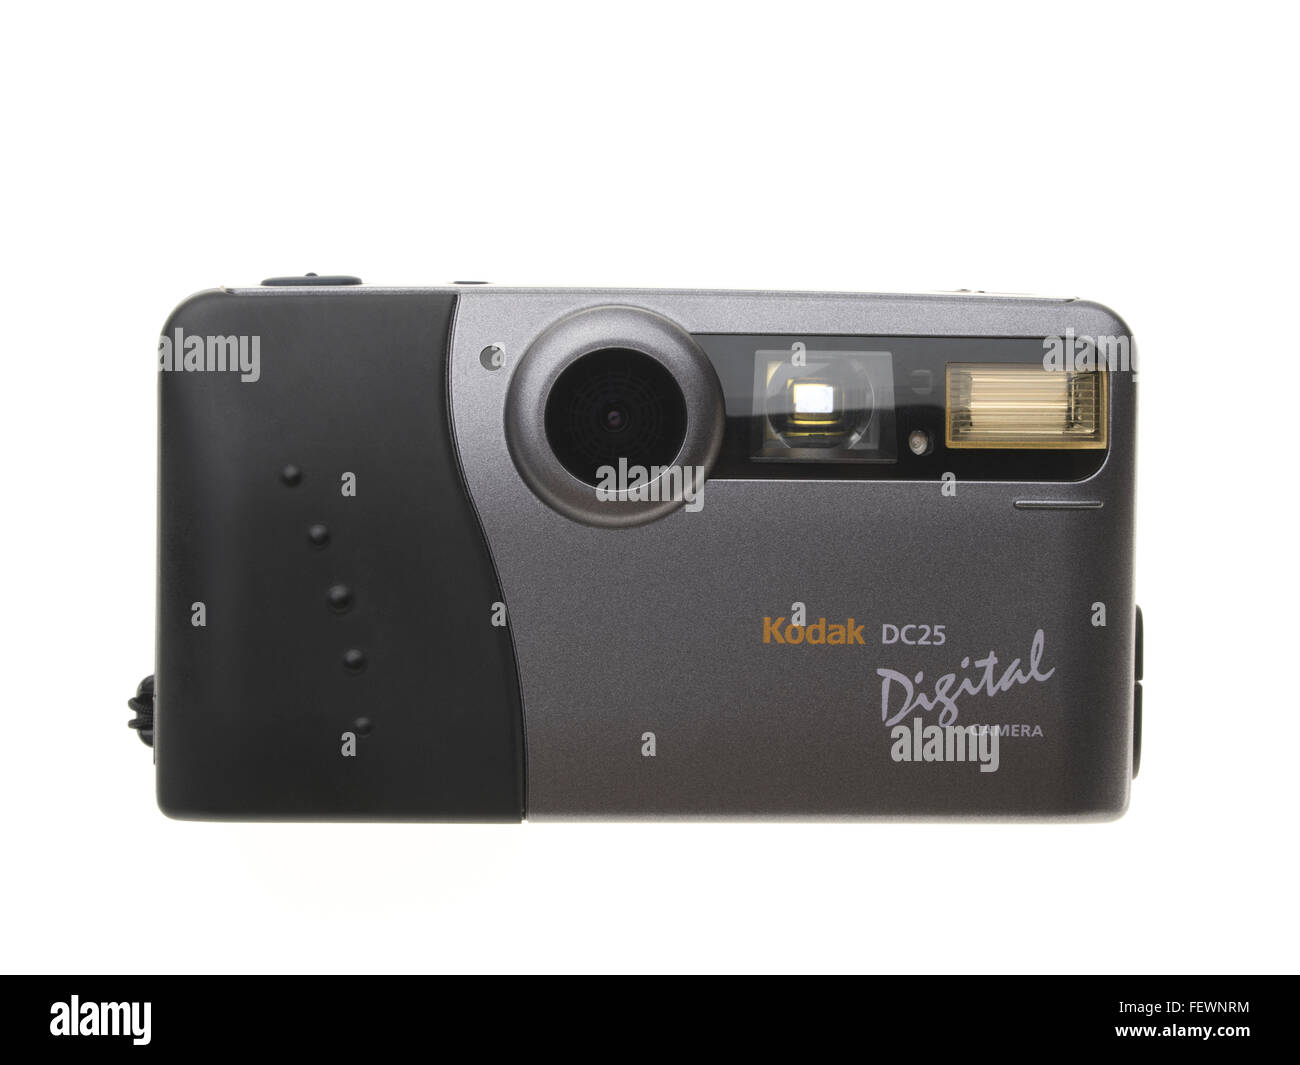 Appareil photo numérique Kodak DC25 l'un des premiers consommateurs de masse de l'appareil photo numérique, sorti en 1996 0,2 mégapixels Banque D'Images